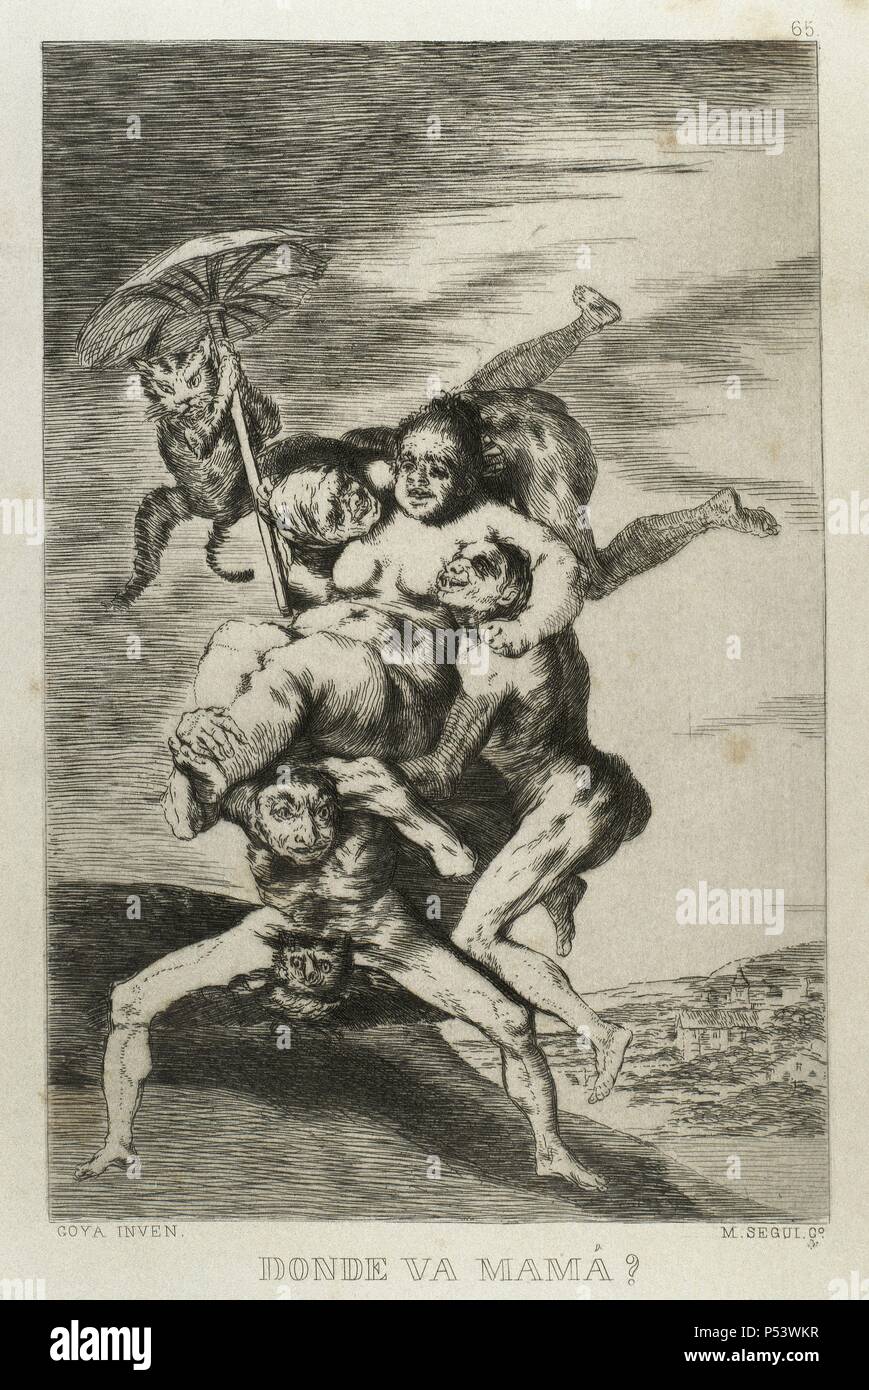 Francisco de Goya (1746-1828). Spanischer Maler und Graphiker. Los Caprichos. ÀDonde va Mama? (Wohin gehst du, Mama?). Nummer 65. Aquatinta. 1799. Reproduktion von M.SEGUI ich Riera. Stockfoto